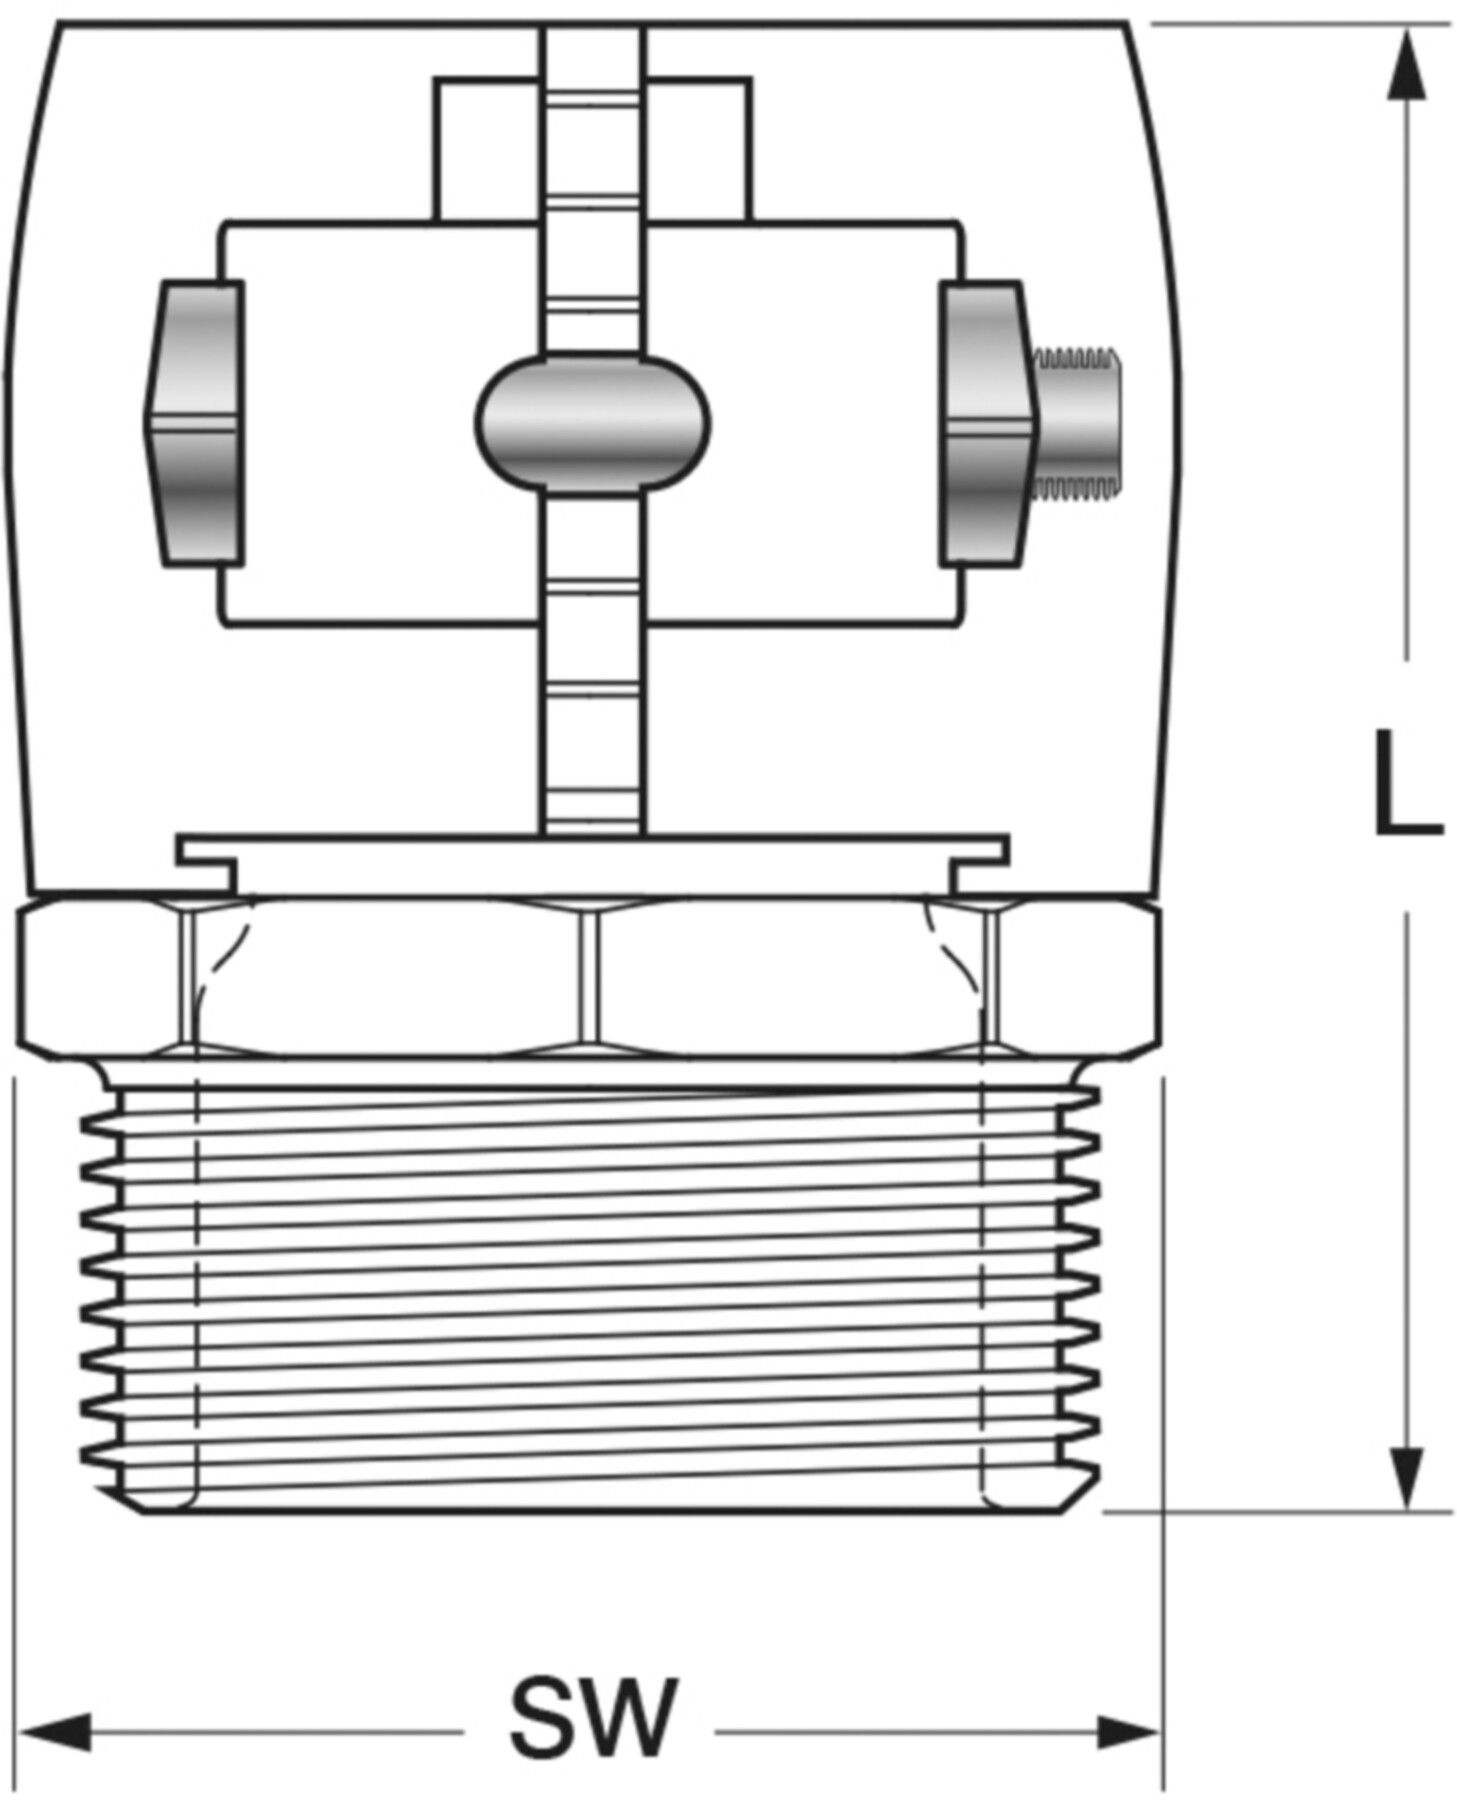 Klemm-Verbindungen mit Aussengewinde Jentro H - 75 ø 75/6.8 mm AG 21/2" - Isopex Fernwärmeleitung